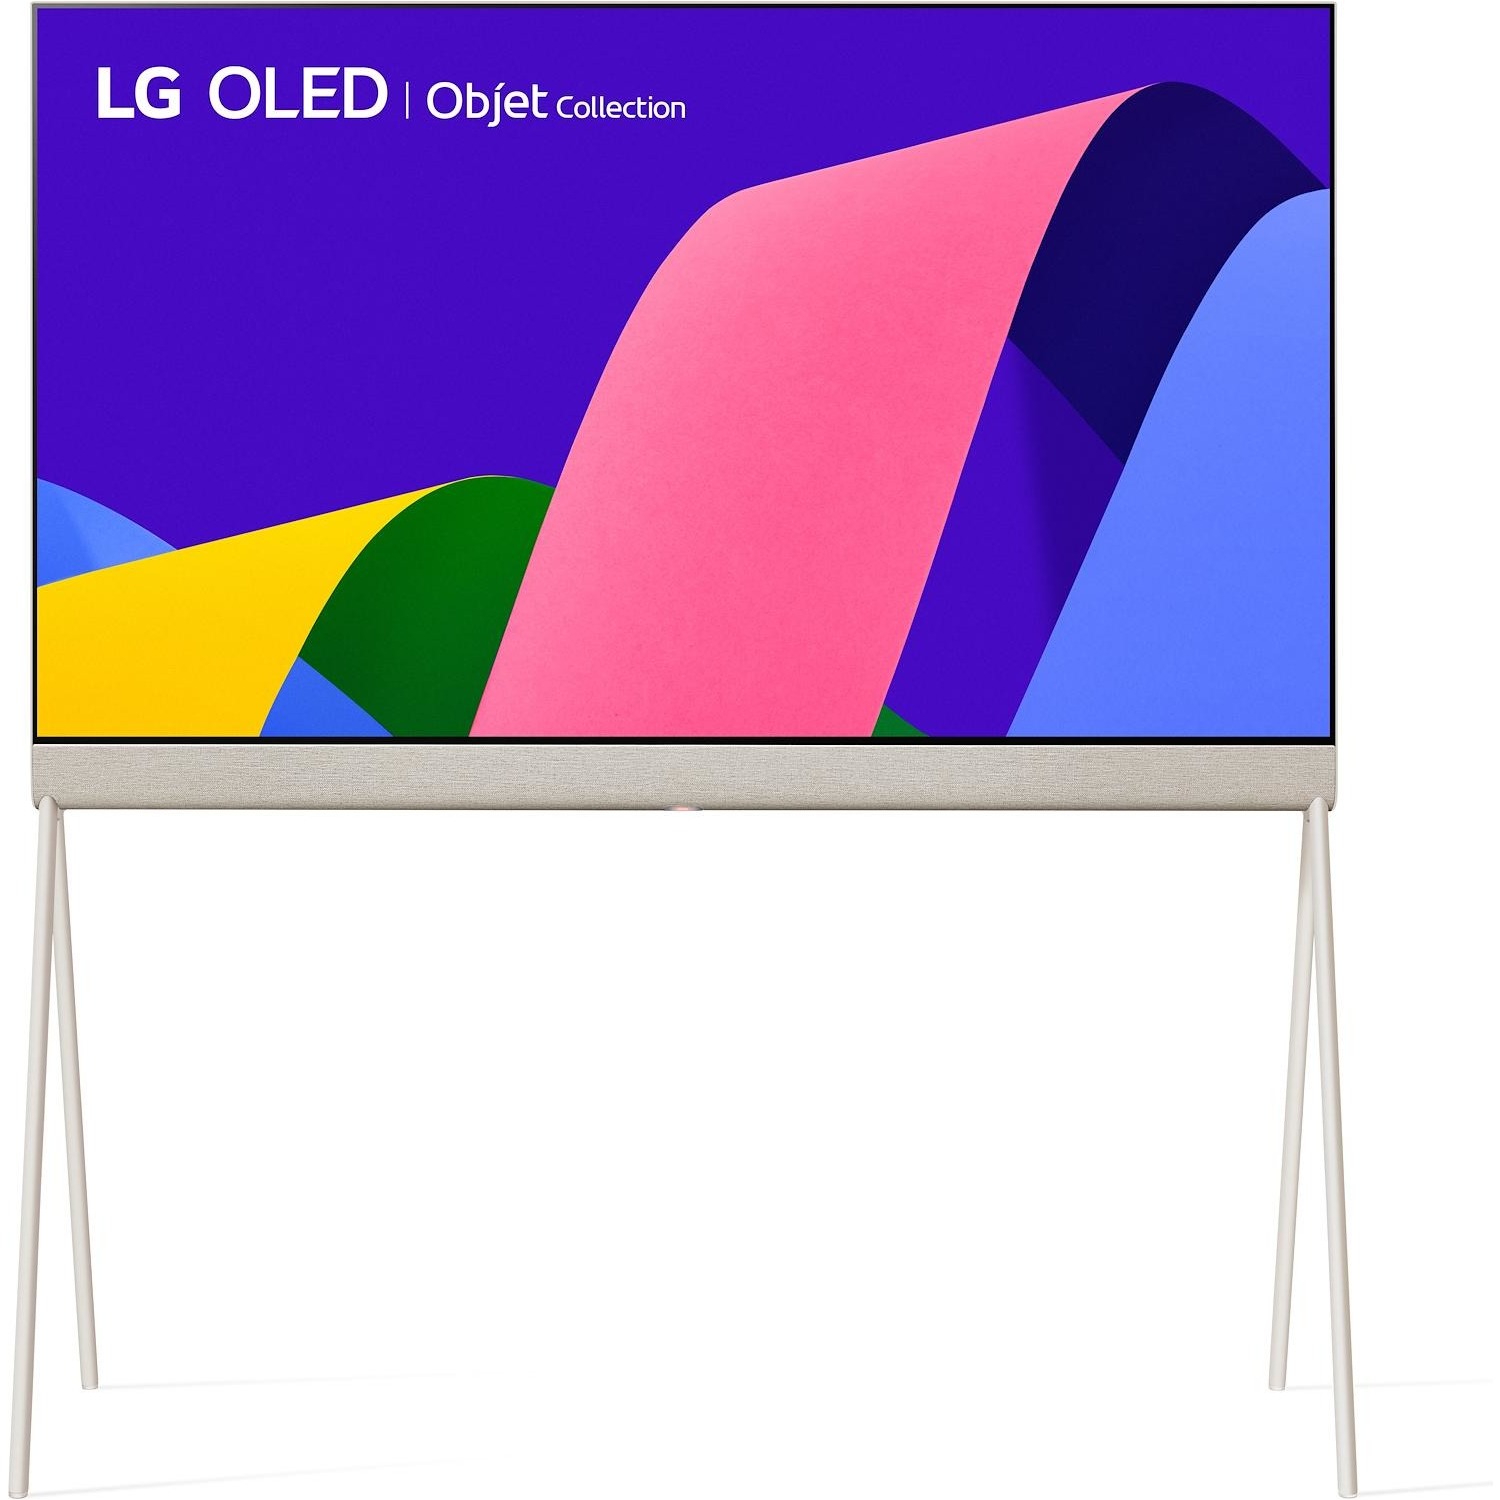 Immagine per TV smart 4K Lifestyle LG OLED Posè 42" 42LX1Q6LA  Objet Collection da DIMOStore